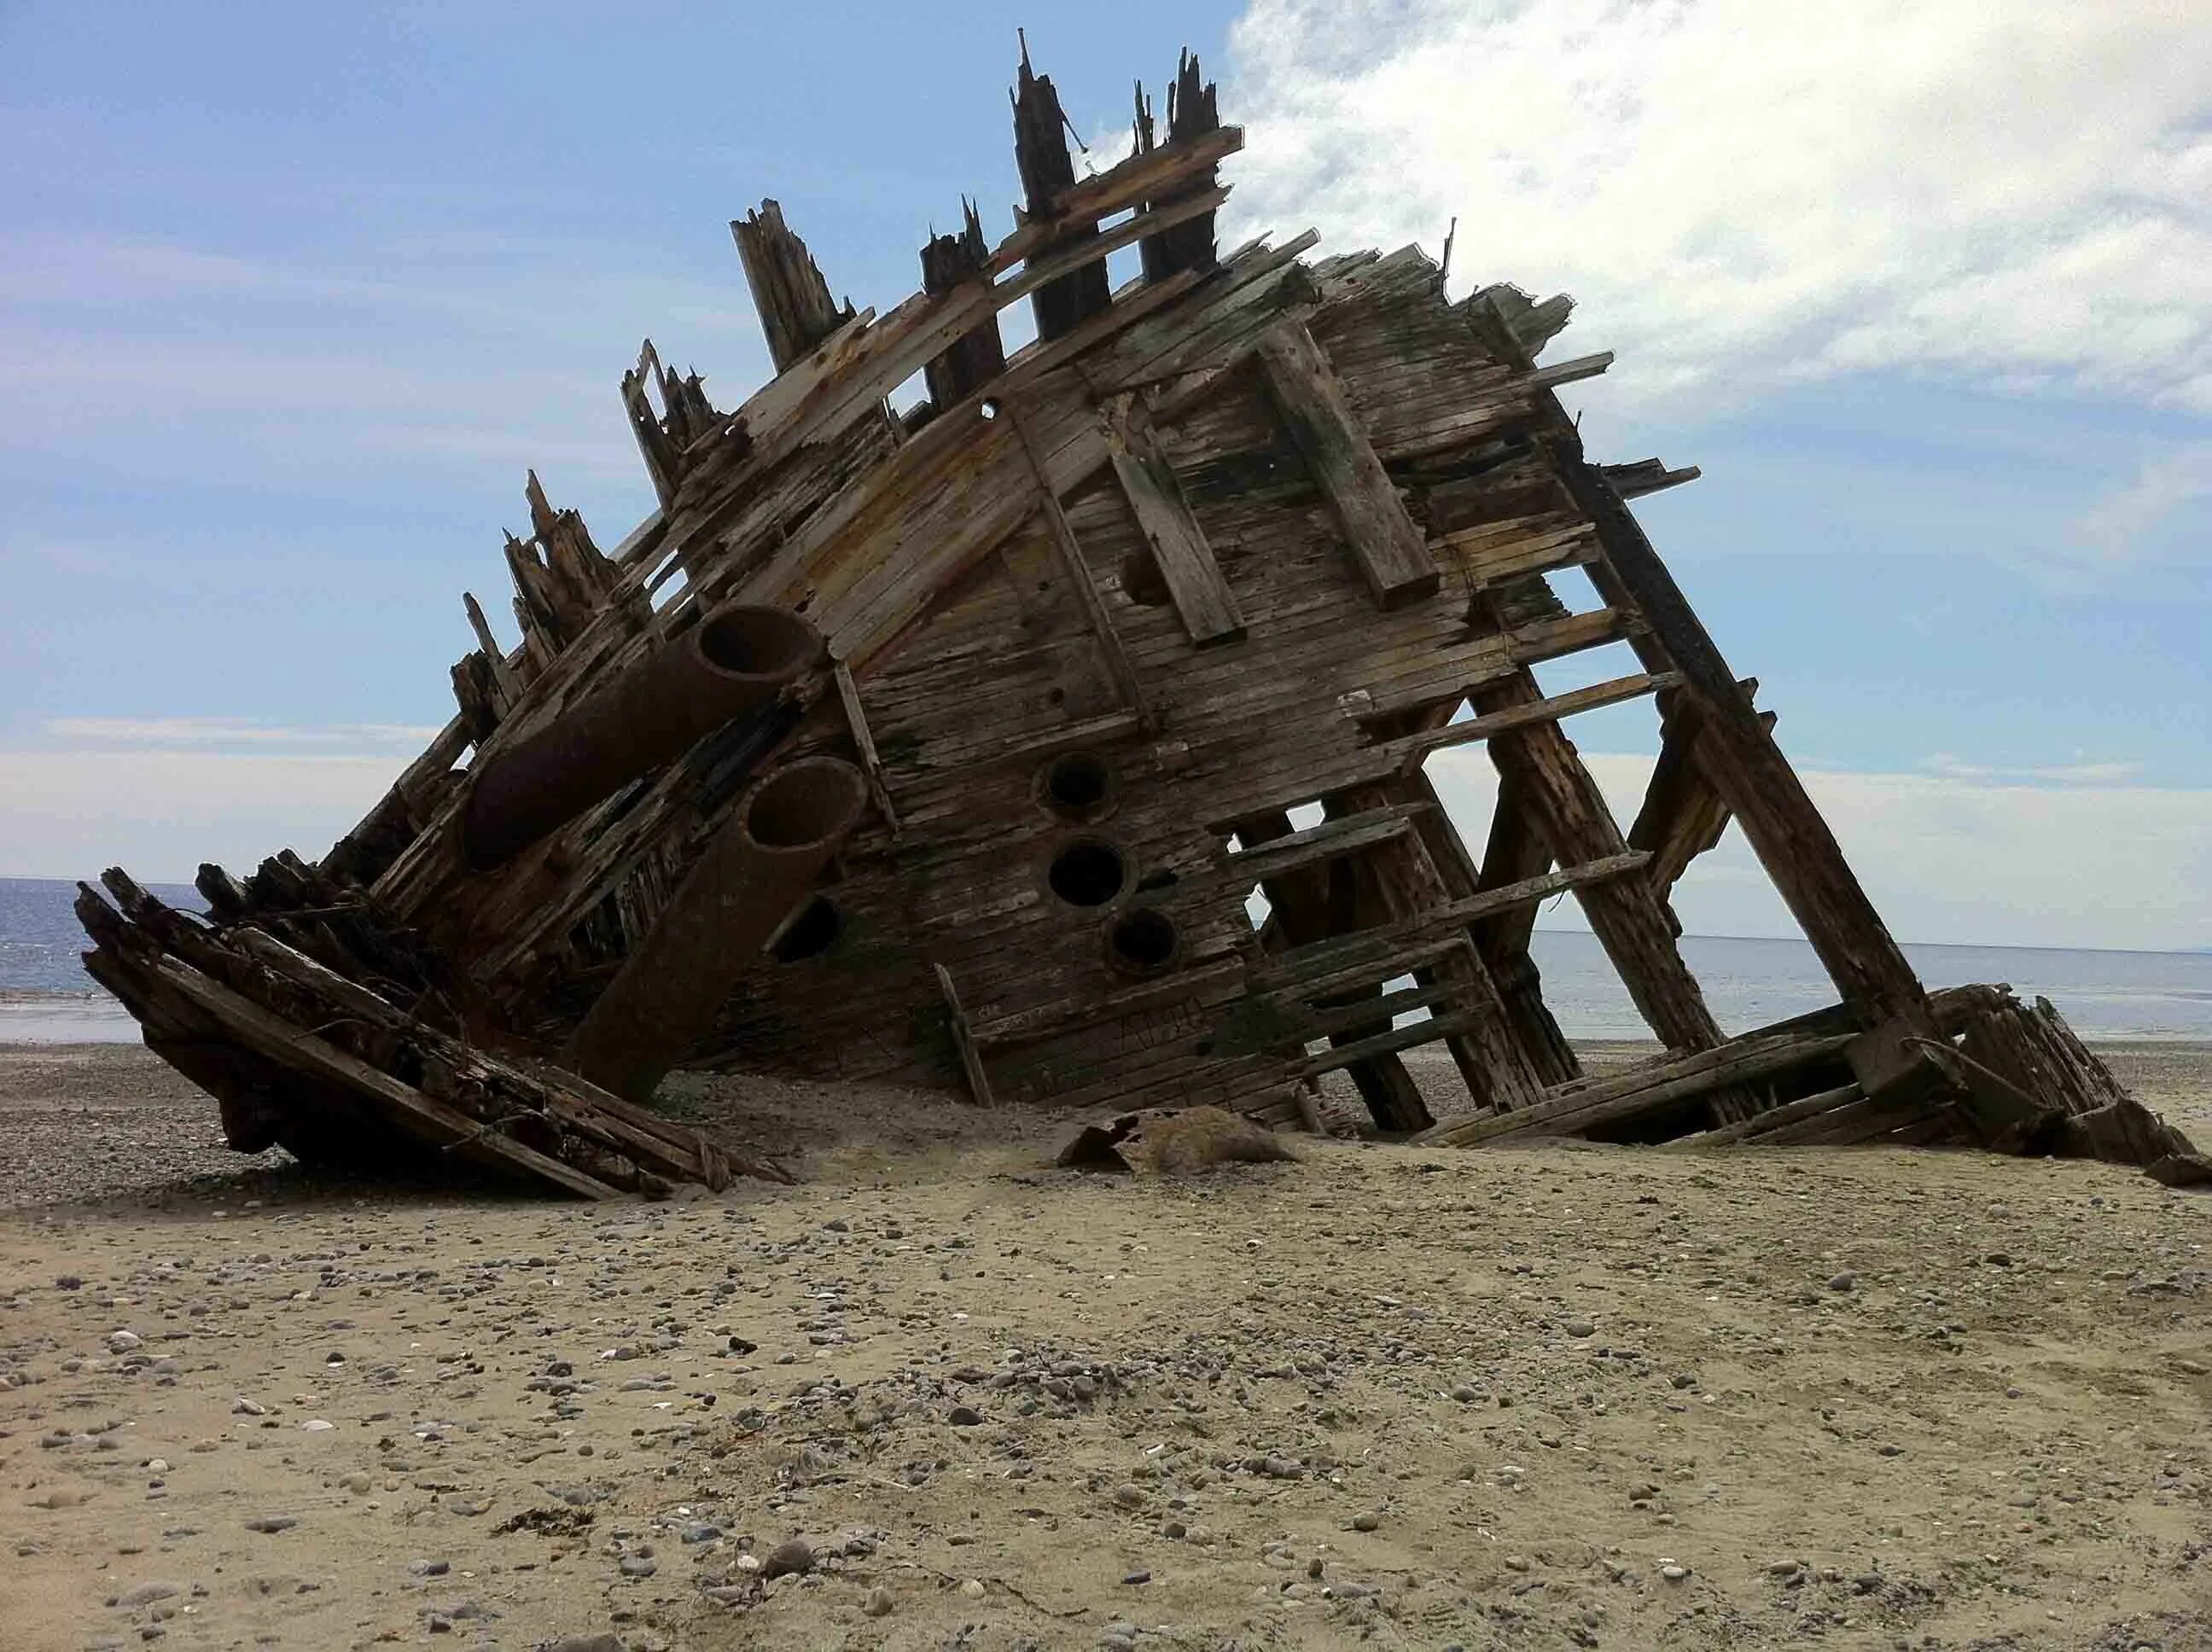 Разбитый корабль. Затонувший деревянный корабль. Обломки корабля. Разрушенный корабль. Broken century